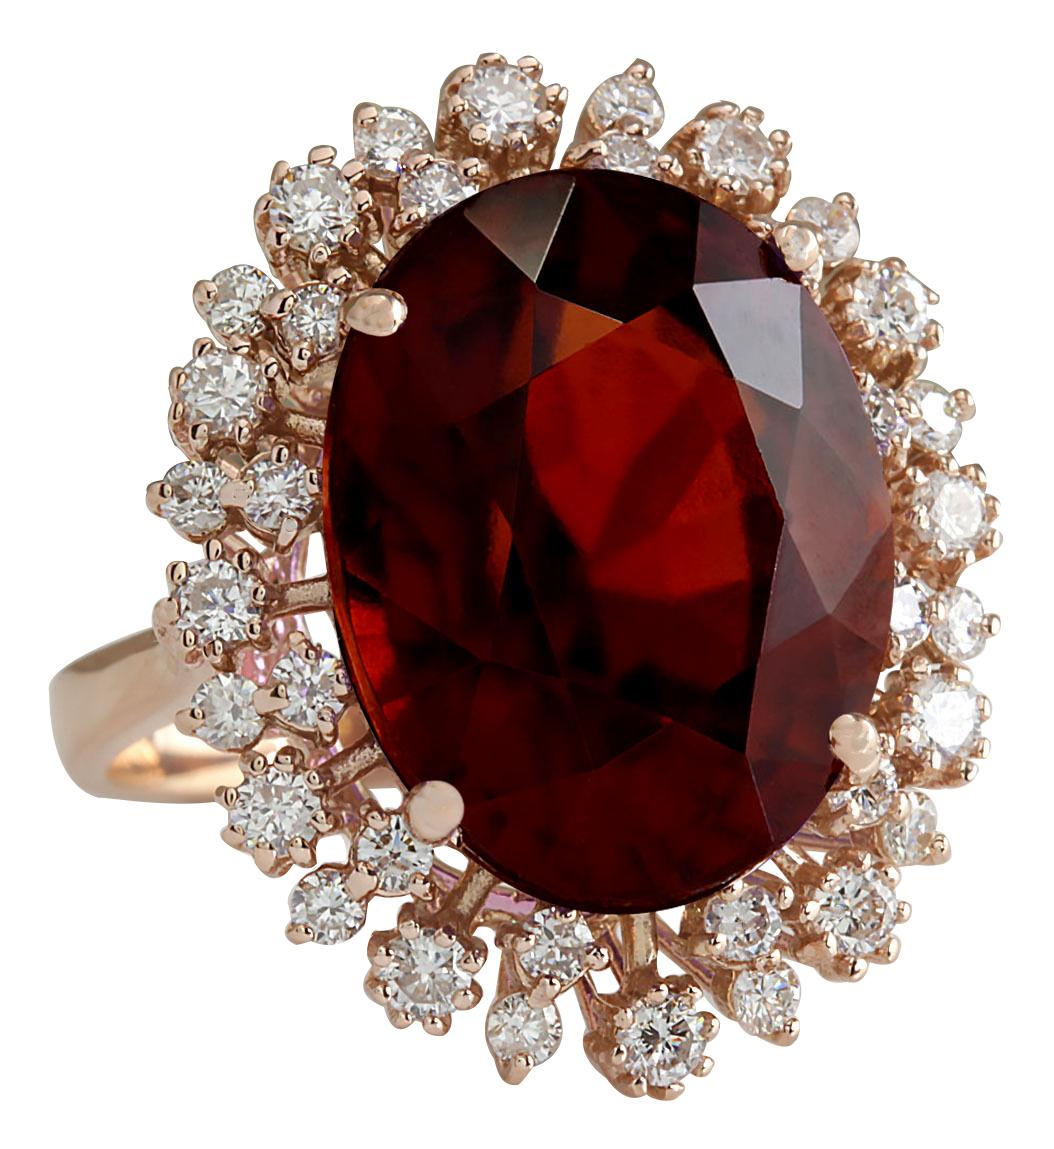 17.99 Carat Hessonite Garnet 14 Karat Rose Gold Diamond Ring
Stamped: 14K Rose Gold
Total Ring Weight: 10.0 Grams
Total  Hessonite Garnet Weight is 16.88 Carat (Measures: 16.00x12.00 mm)
Color: Red
Total  Diamond Weight is 1.11 Carat
Color: F-G,